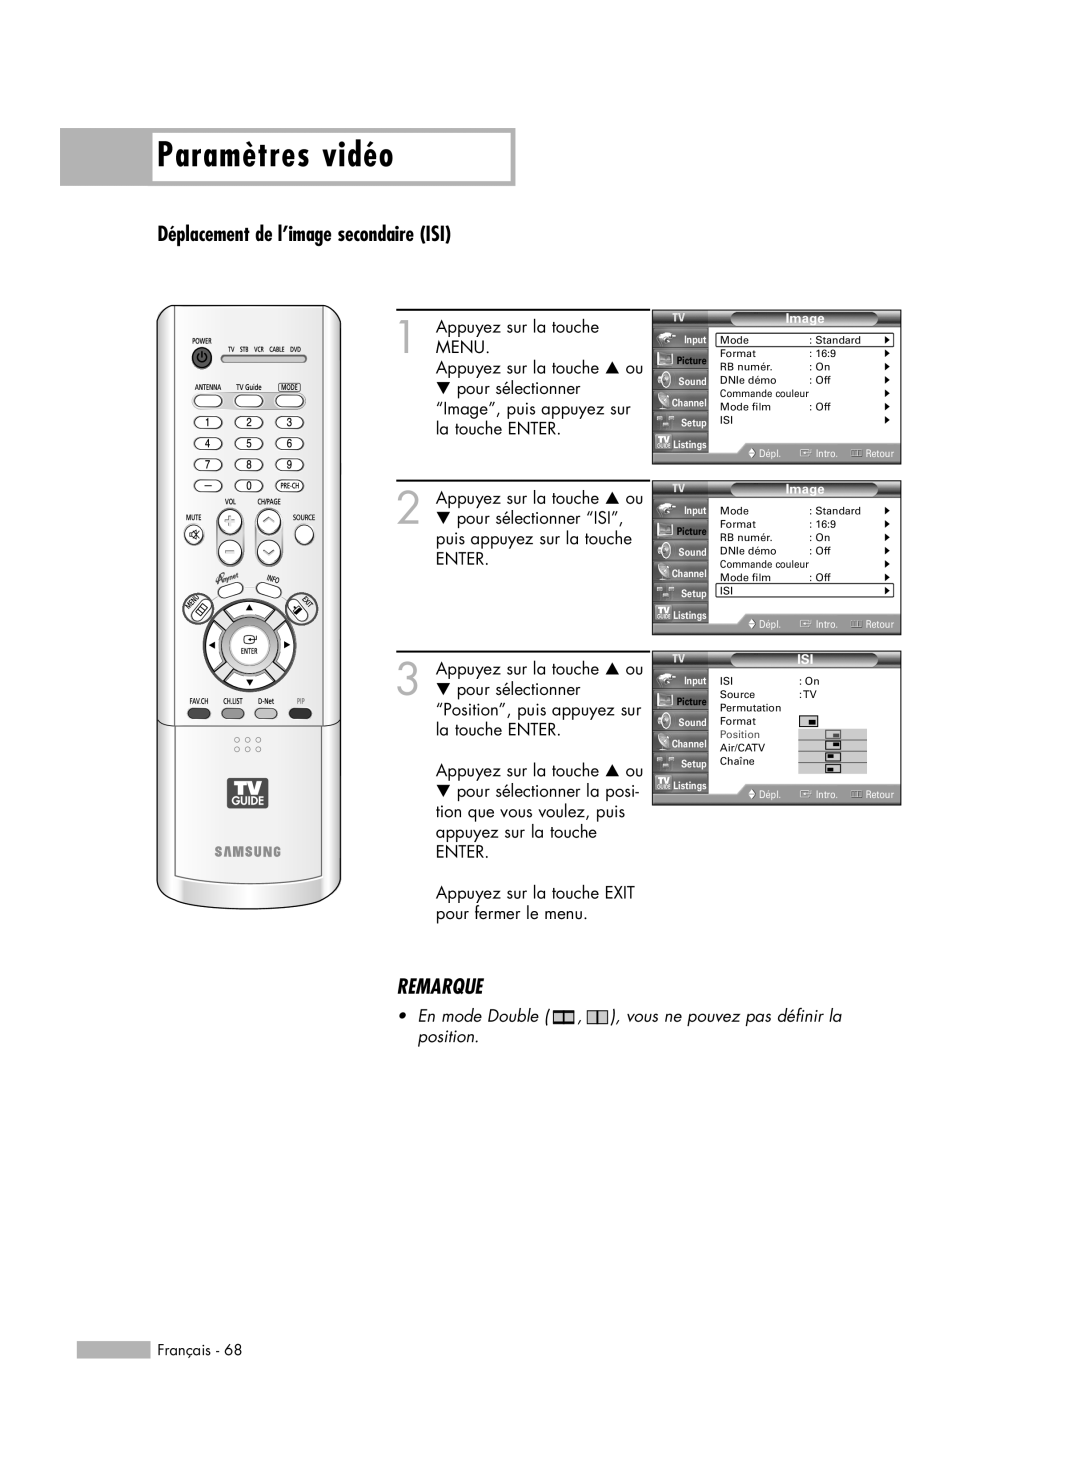 Samsung HL-R6178W, HL-R5078W, HL-R5678W, HL-R7178W manual Déplacement de l’image secondaire ISI, Paramètres vidéo, Remarque 